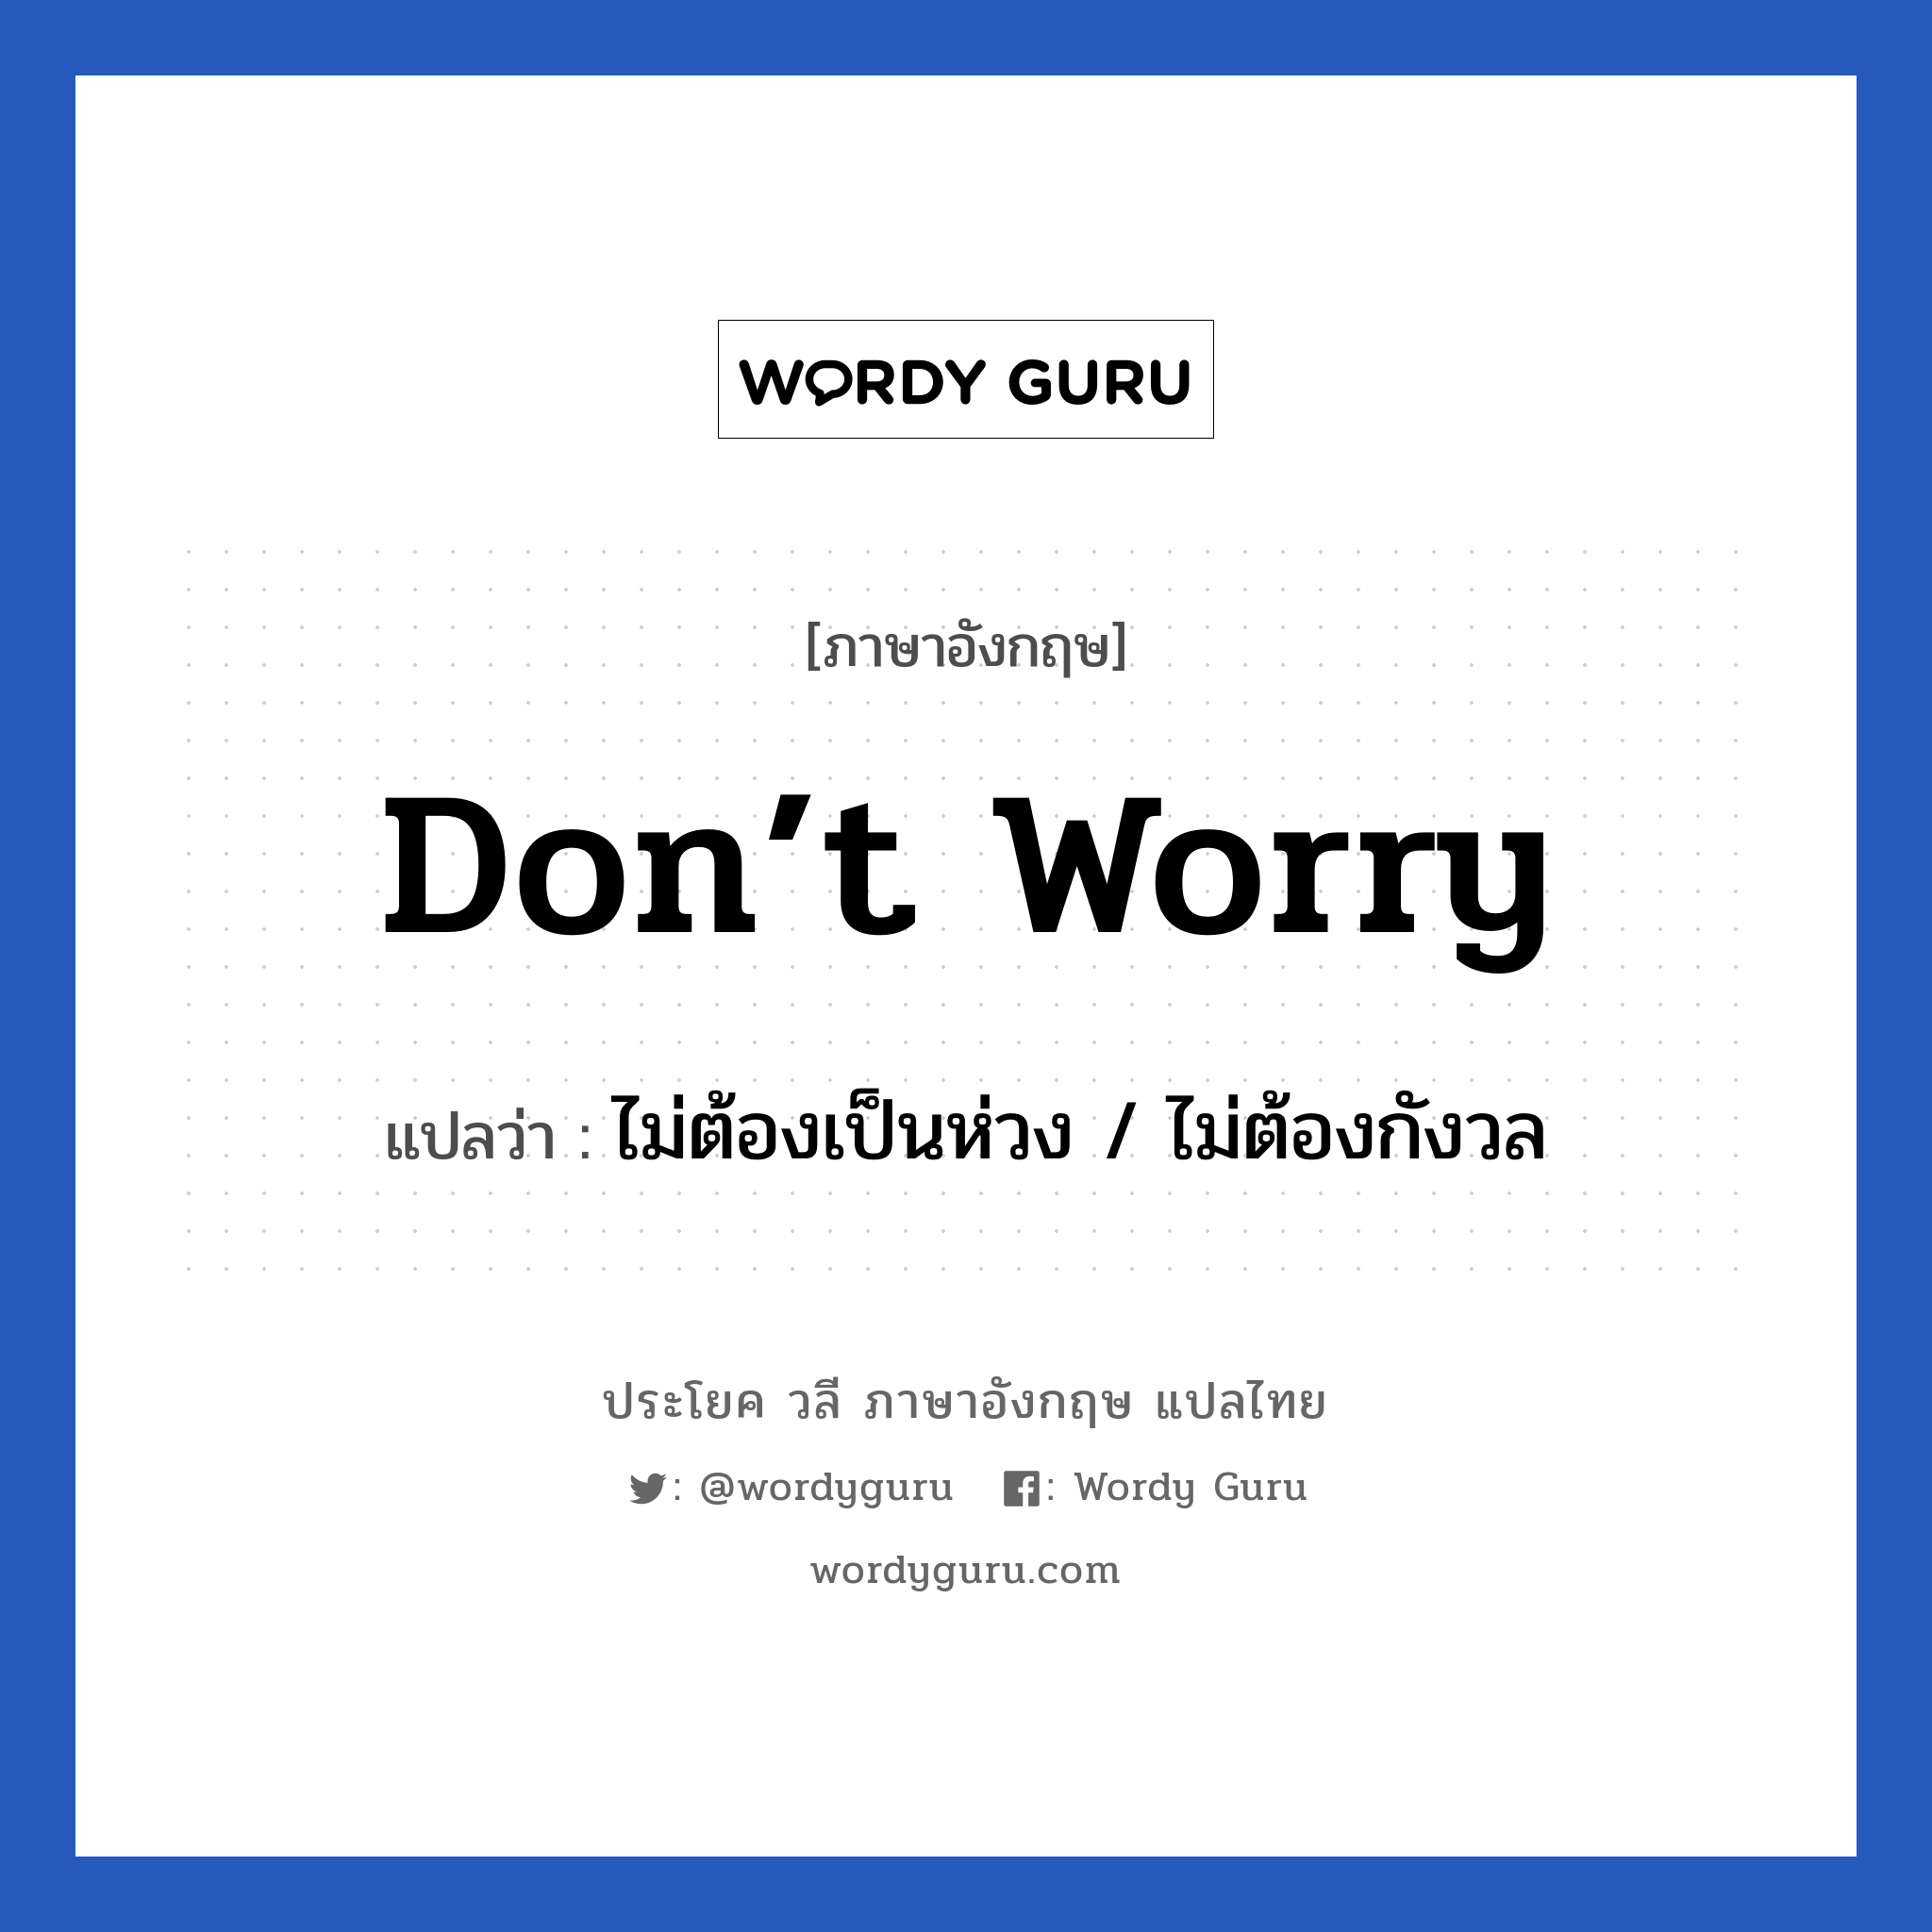 ไม่ต้องเป็นห่วง / ไม่ต้องกังวล ภาษาอังกฤษ?, วลีภาษาอังกฤษ ไม่ต้องเป็นห่วง / ไม่ต้องกังวล แปลว่า Don’t worry